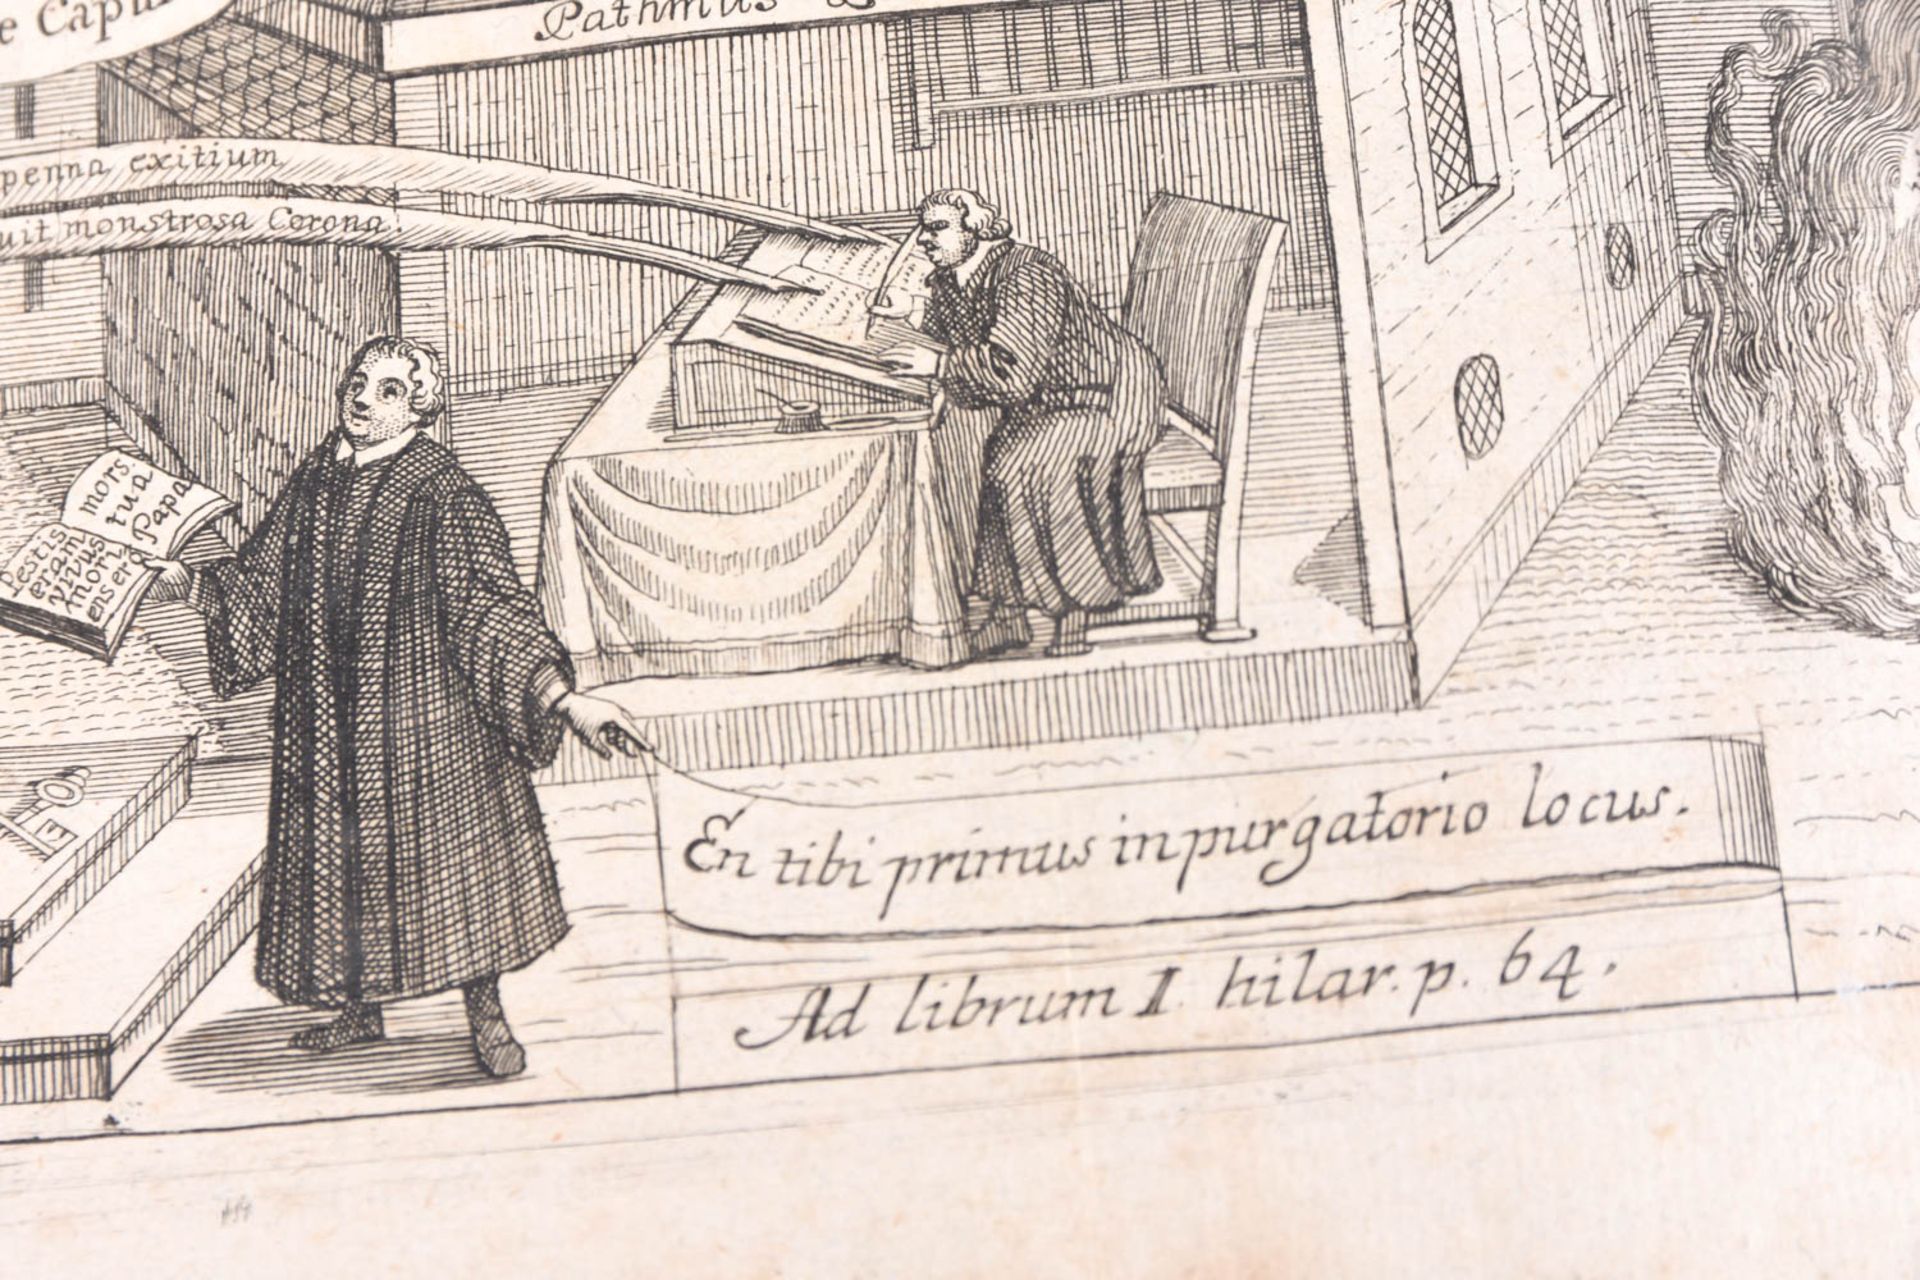 Hilaria Evangelica, 1719 - Image 33 of 47